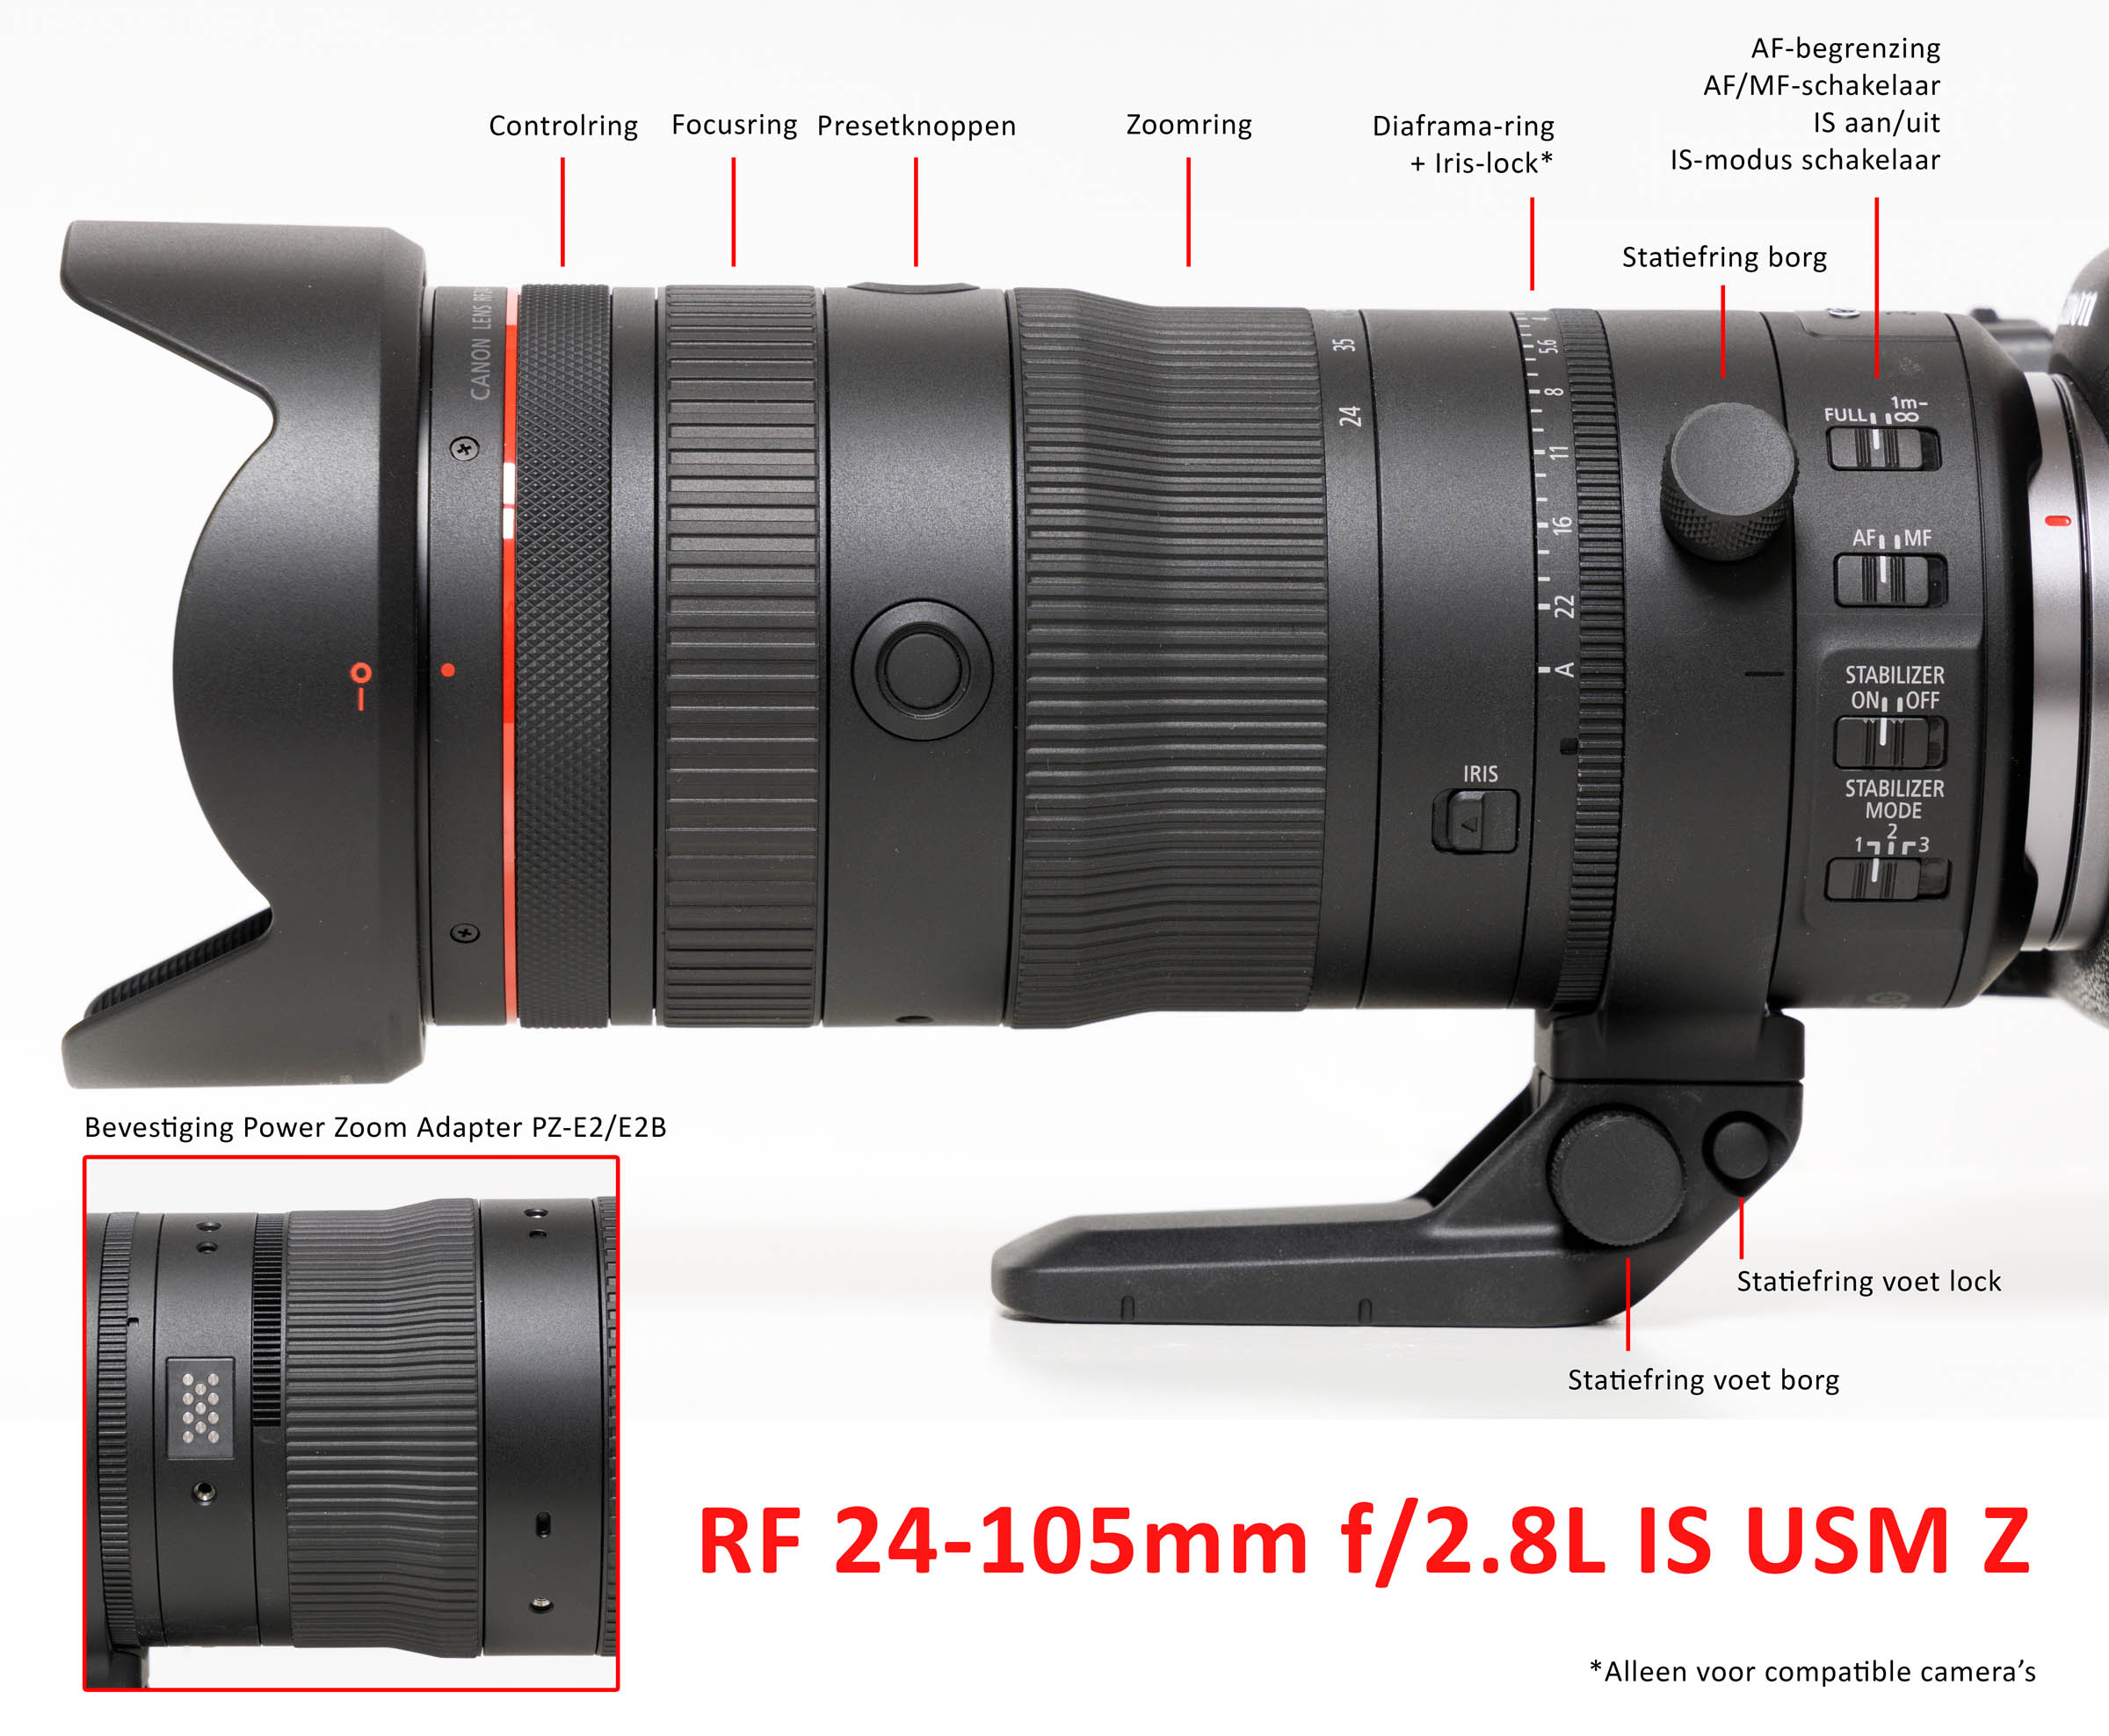 RF 24-105mm 2.8L IS details